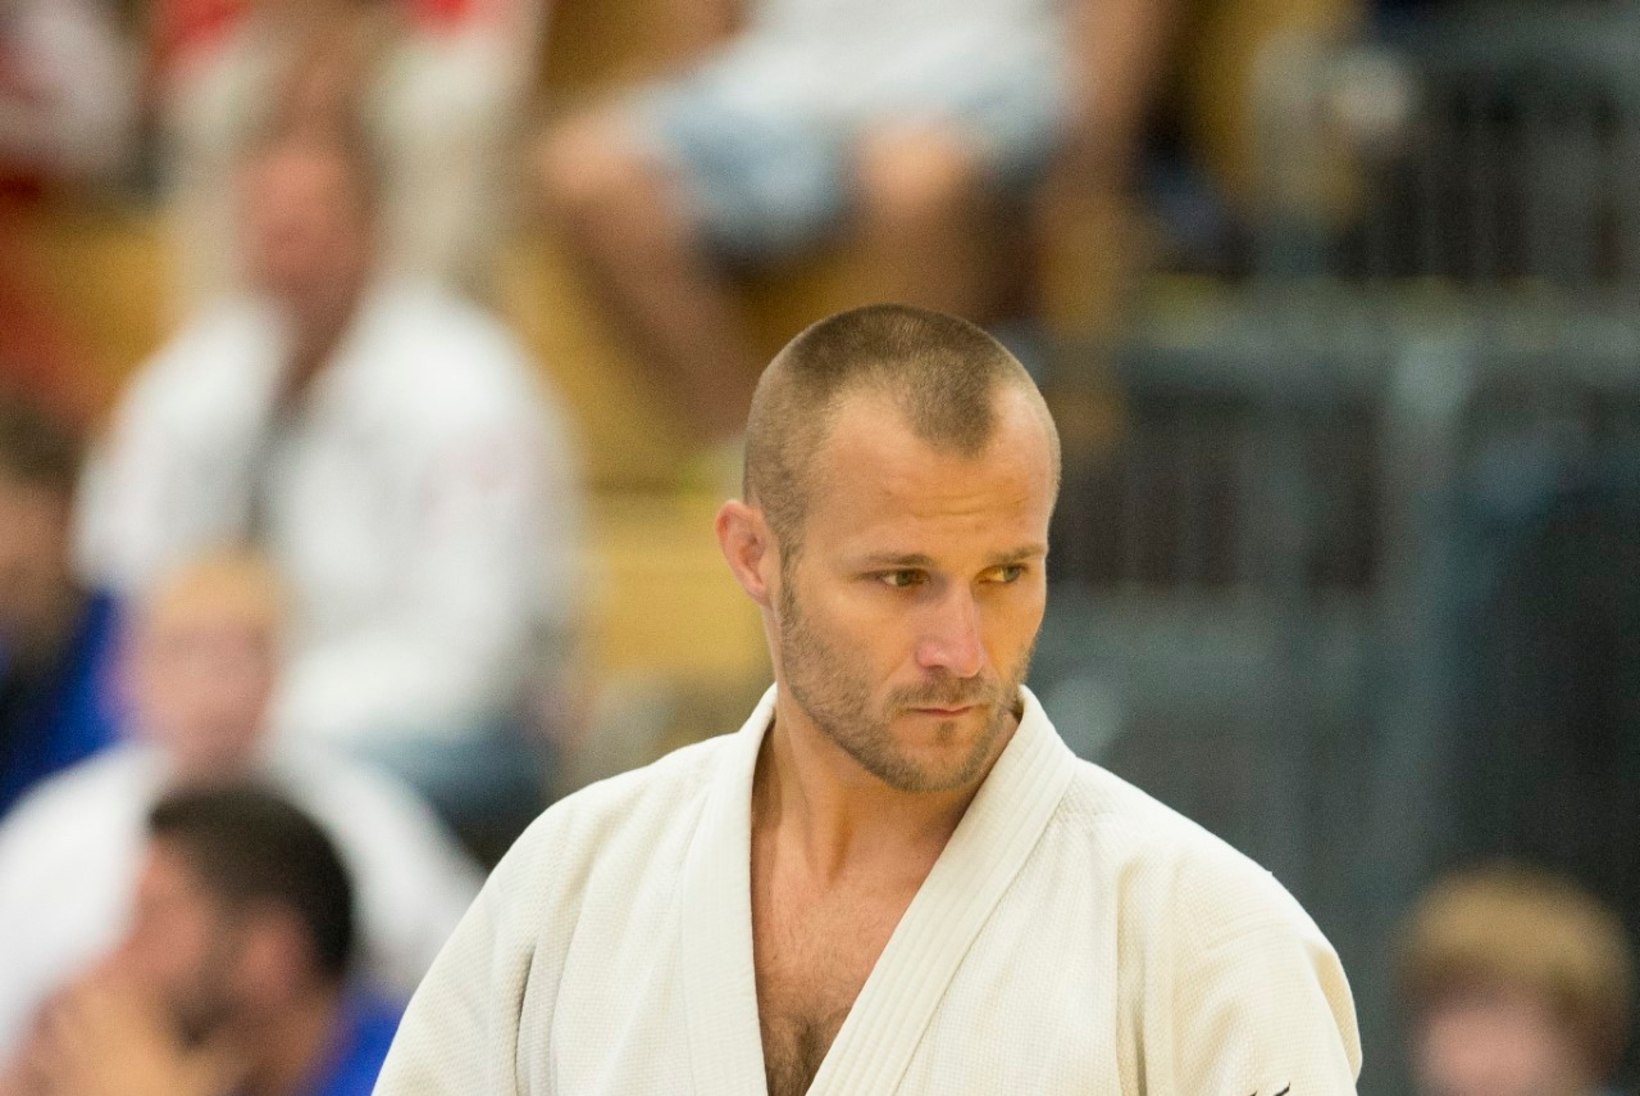 Düsseldorfi GP Eesti judokatele erilist rõõmu ei valmistanud